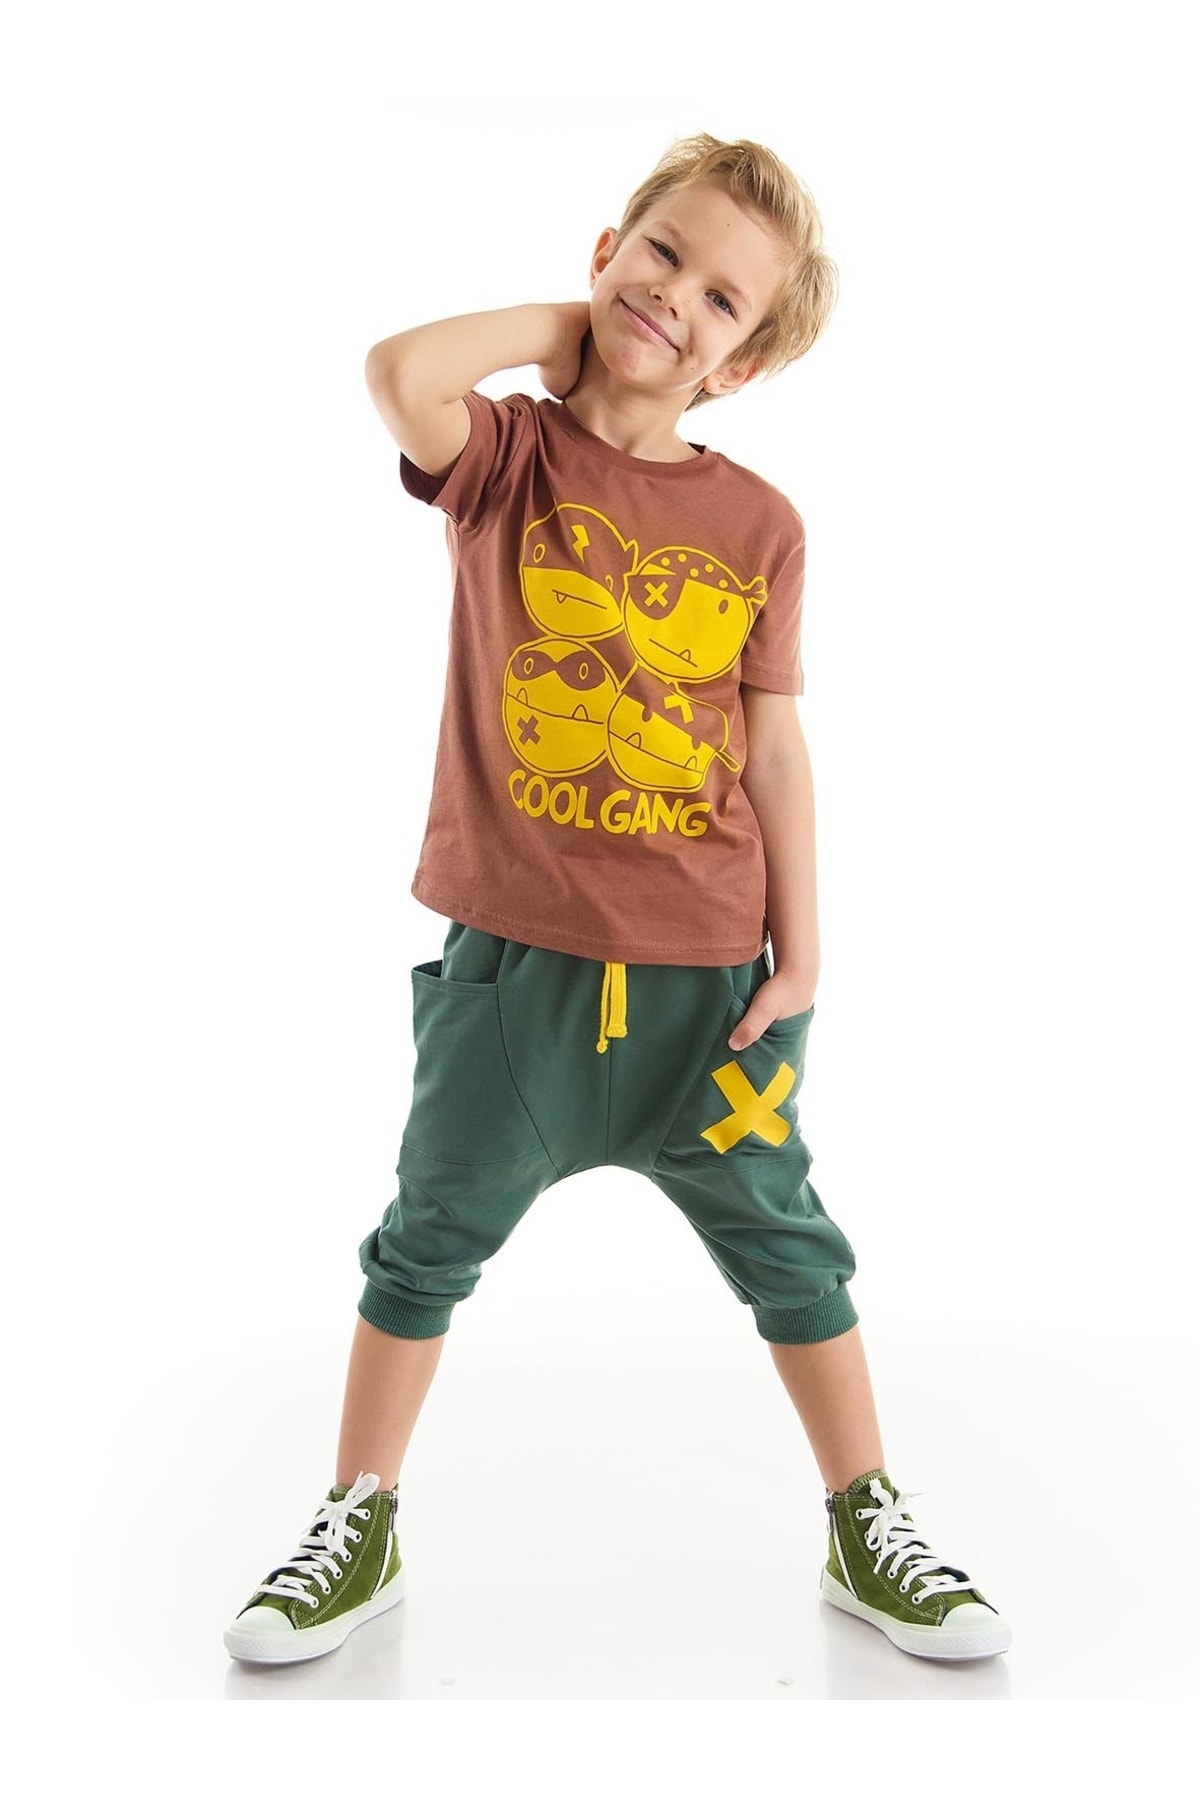 Levně Denokids Cool Gang Boy's T-shirt Capri Shorts Set